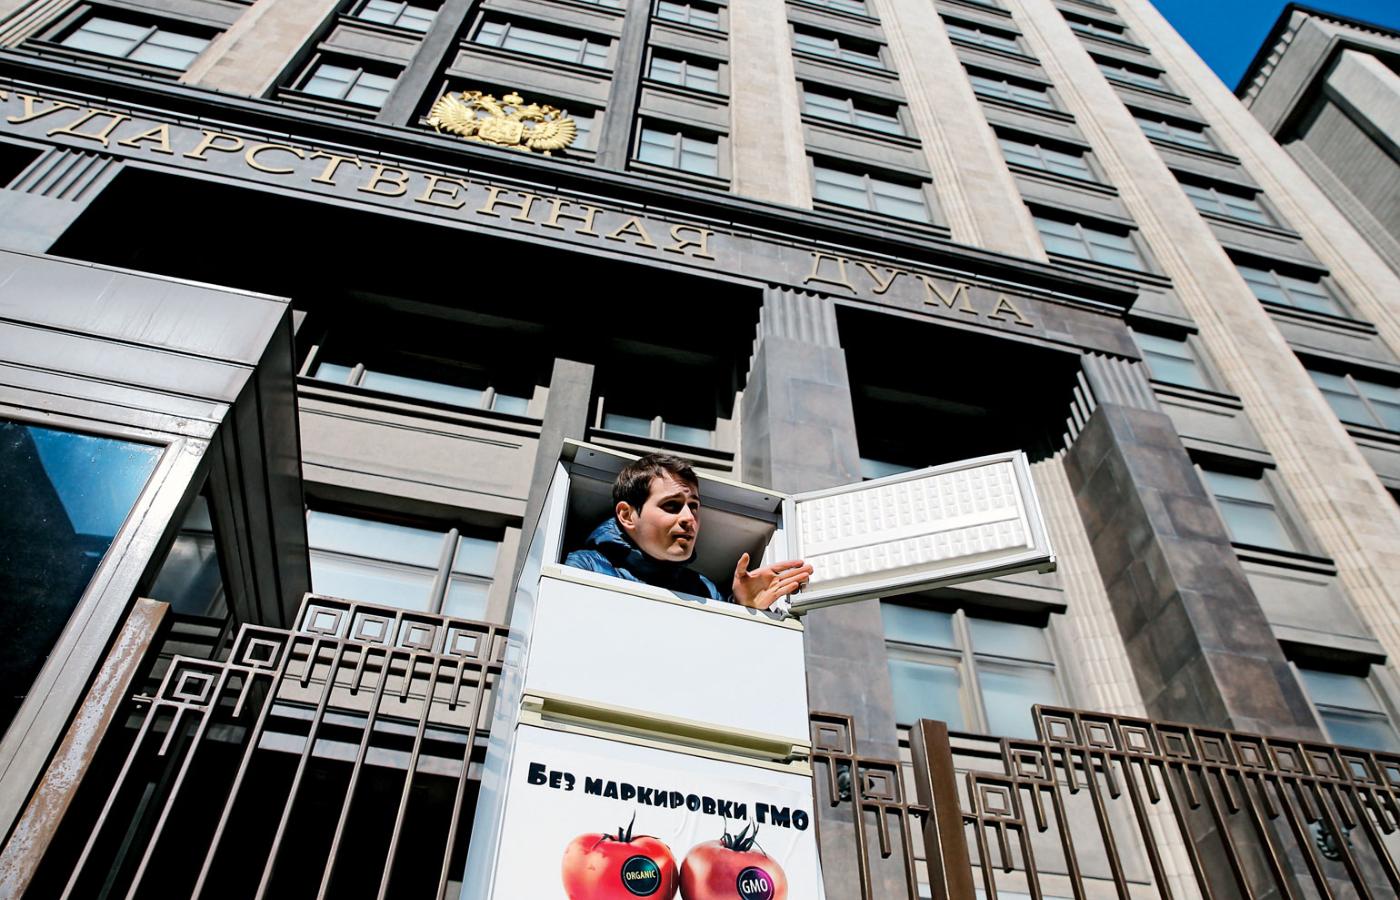 Moskwa, jednoosobowy protest przeciwko importowi produktów GMO.